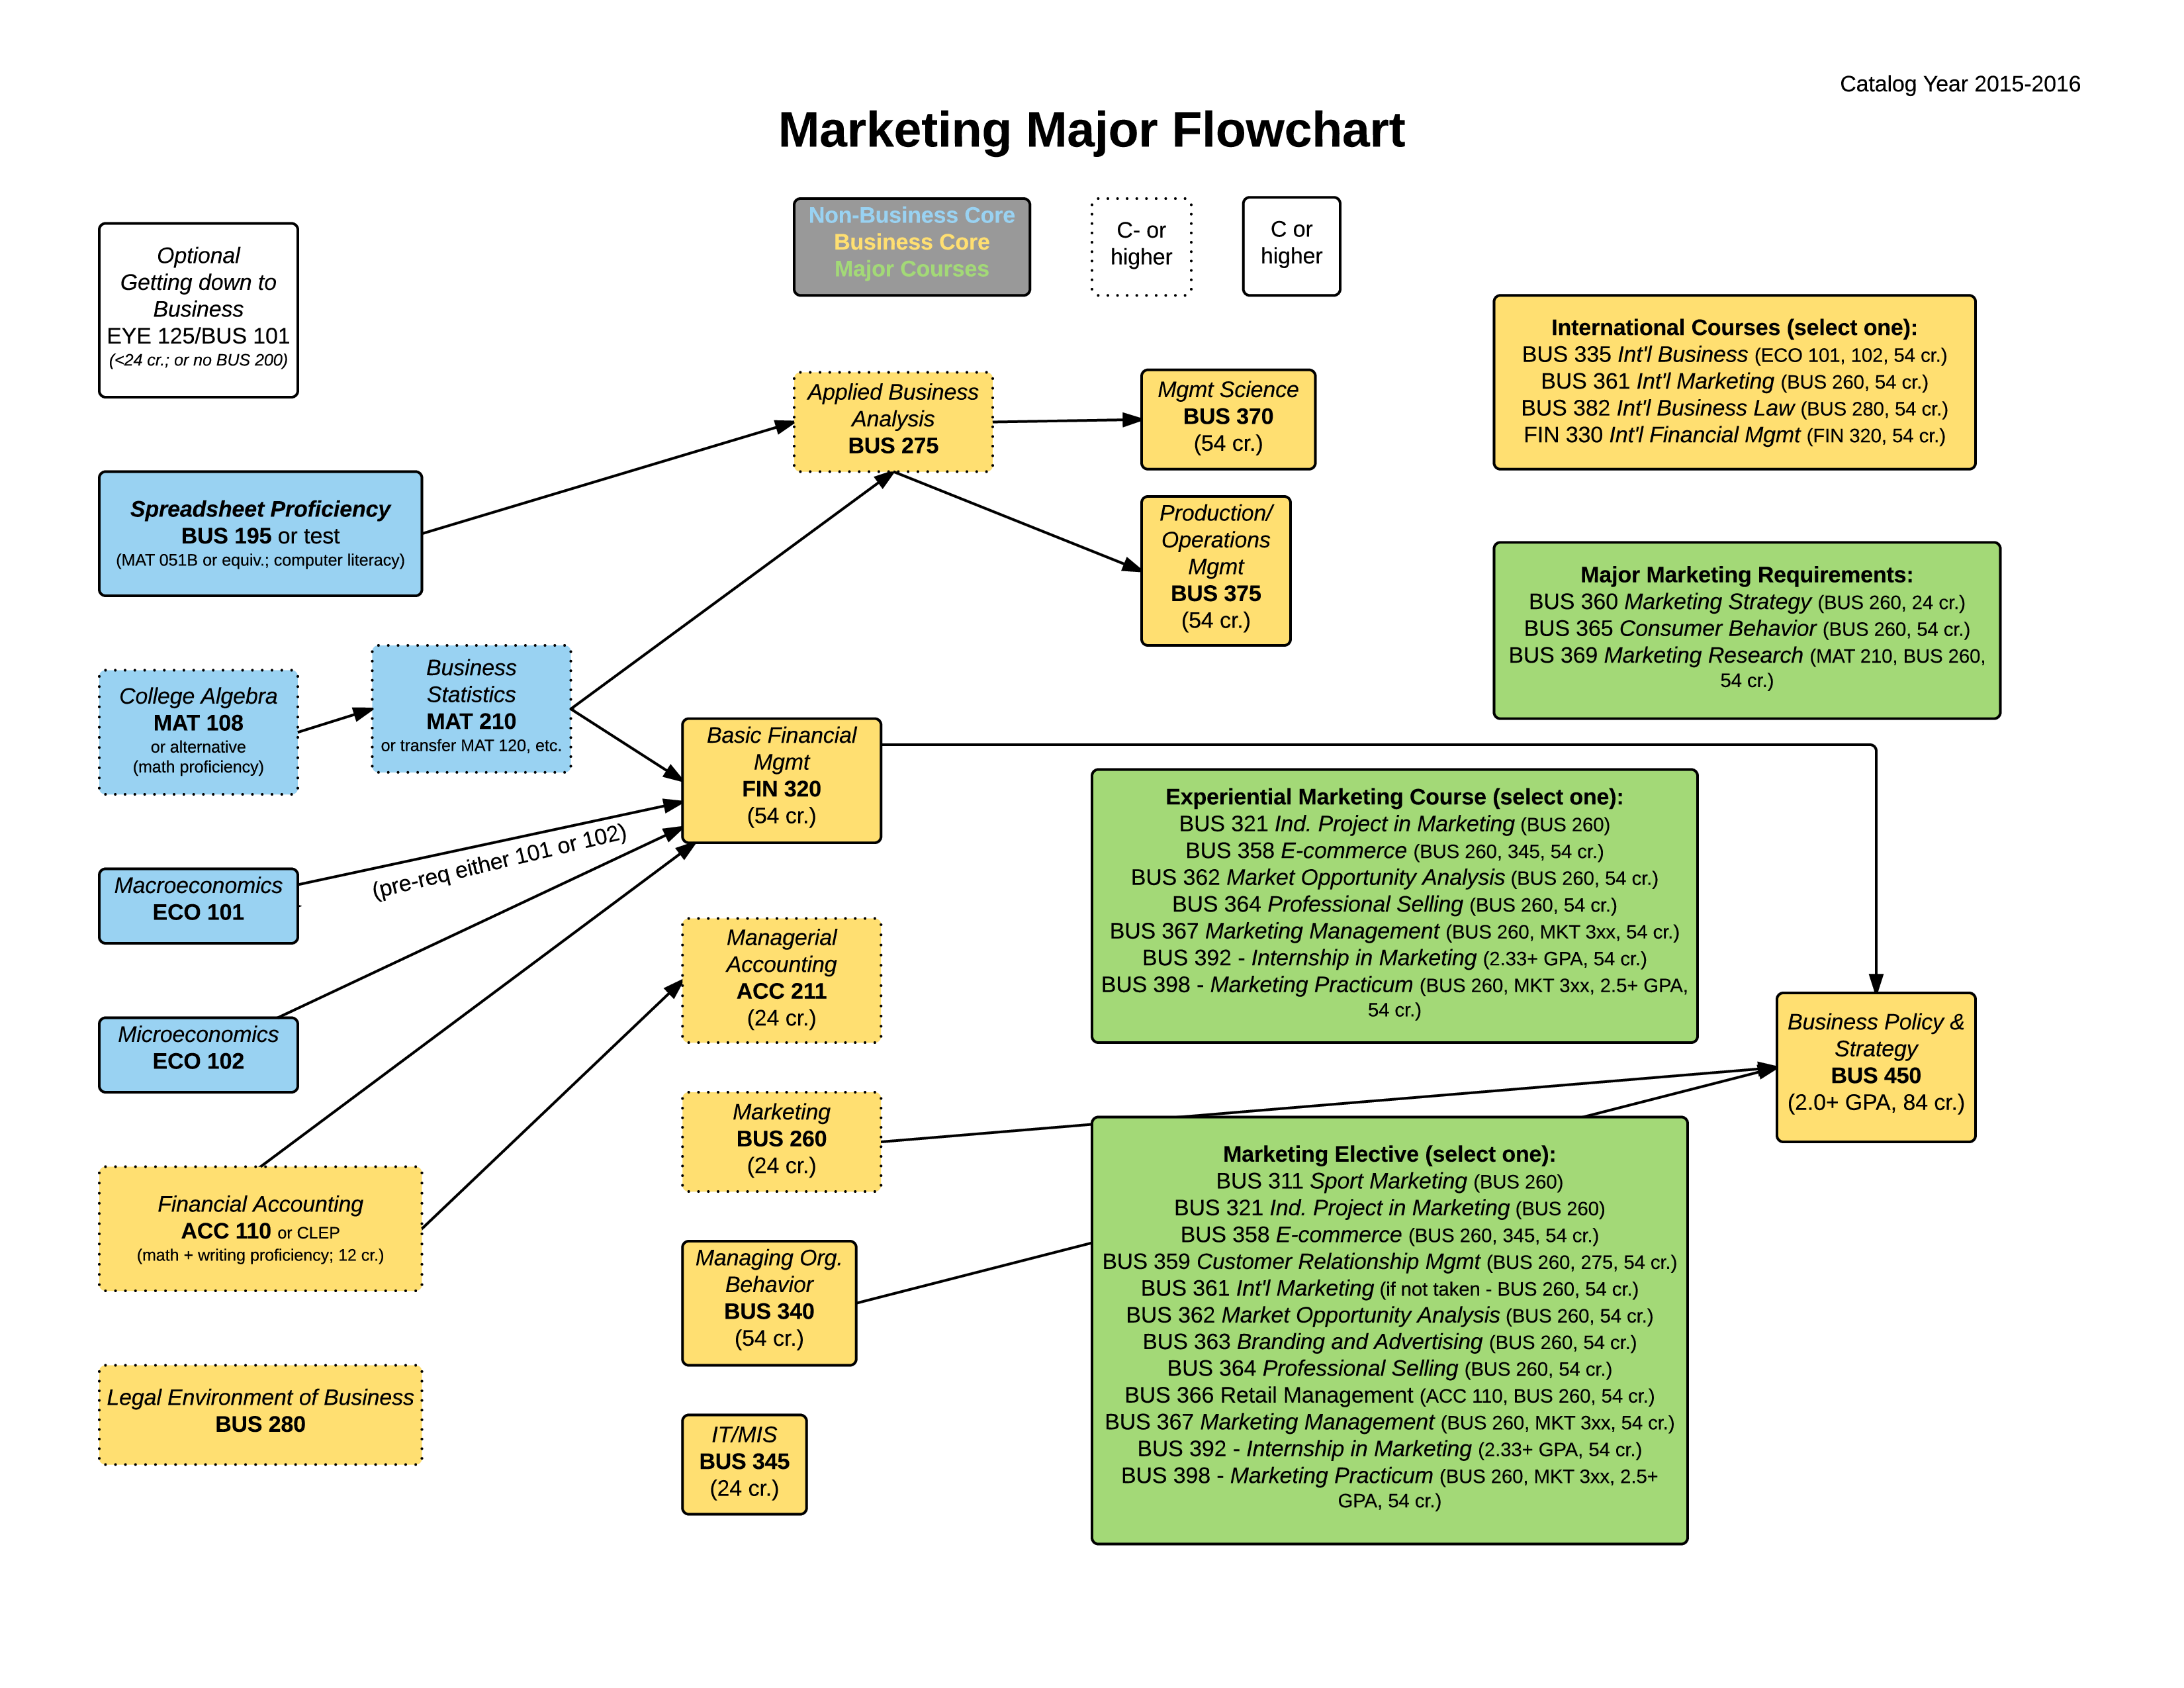 marketing flow plantilla imagen principal